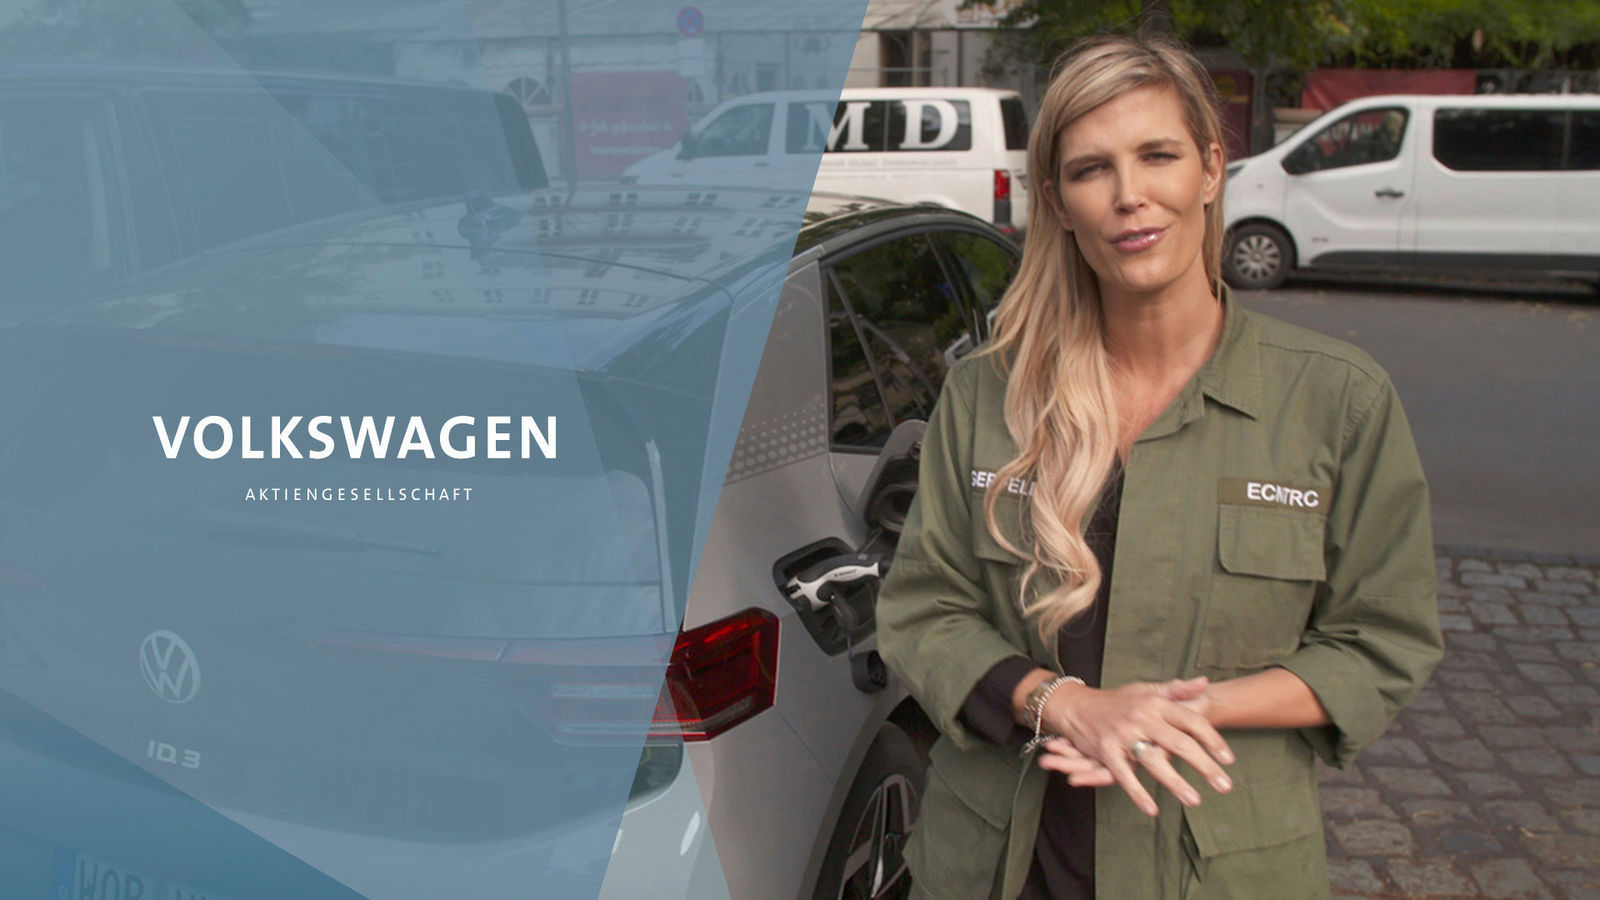 YouTube/Download-Link: "DRIVE. Volkswagen Group Forum: Verena Wriedt mit dem Volkswagen ID.3 einen Tag lang in Berlin"